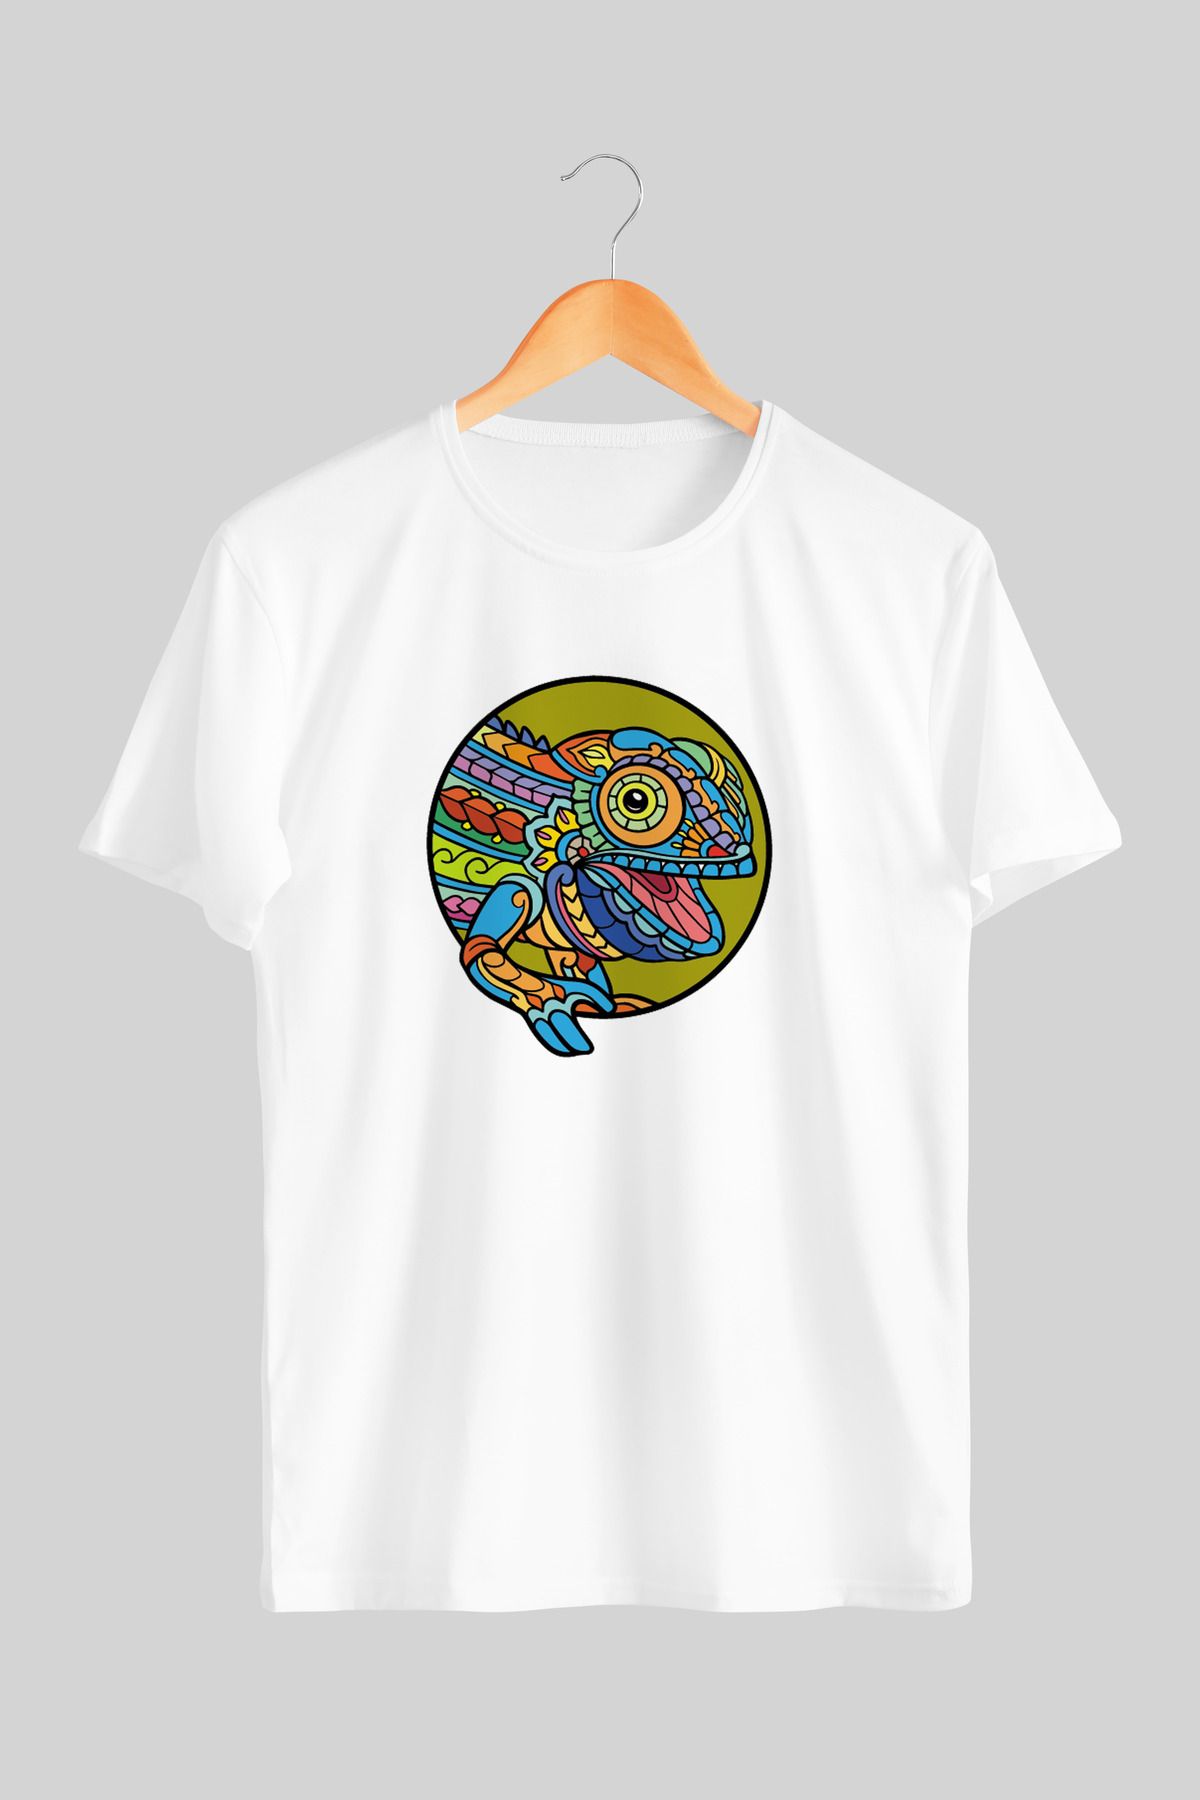 BARGAN Giyim Colorful Chameleon Mandala Bukalemun Sanatsal Tasarım Tshirt